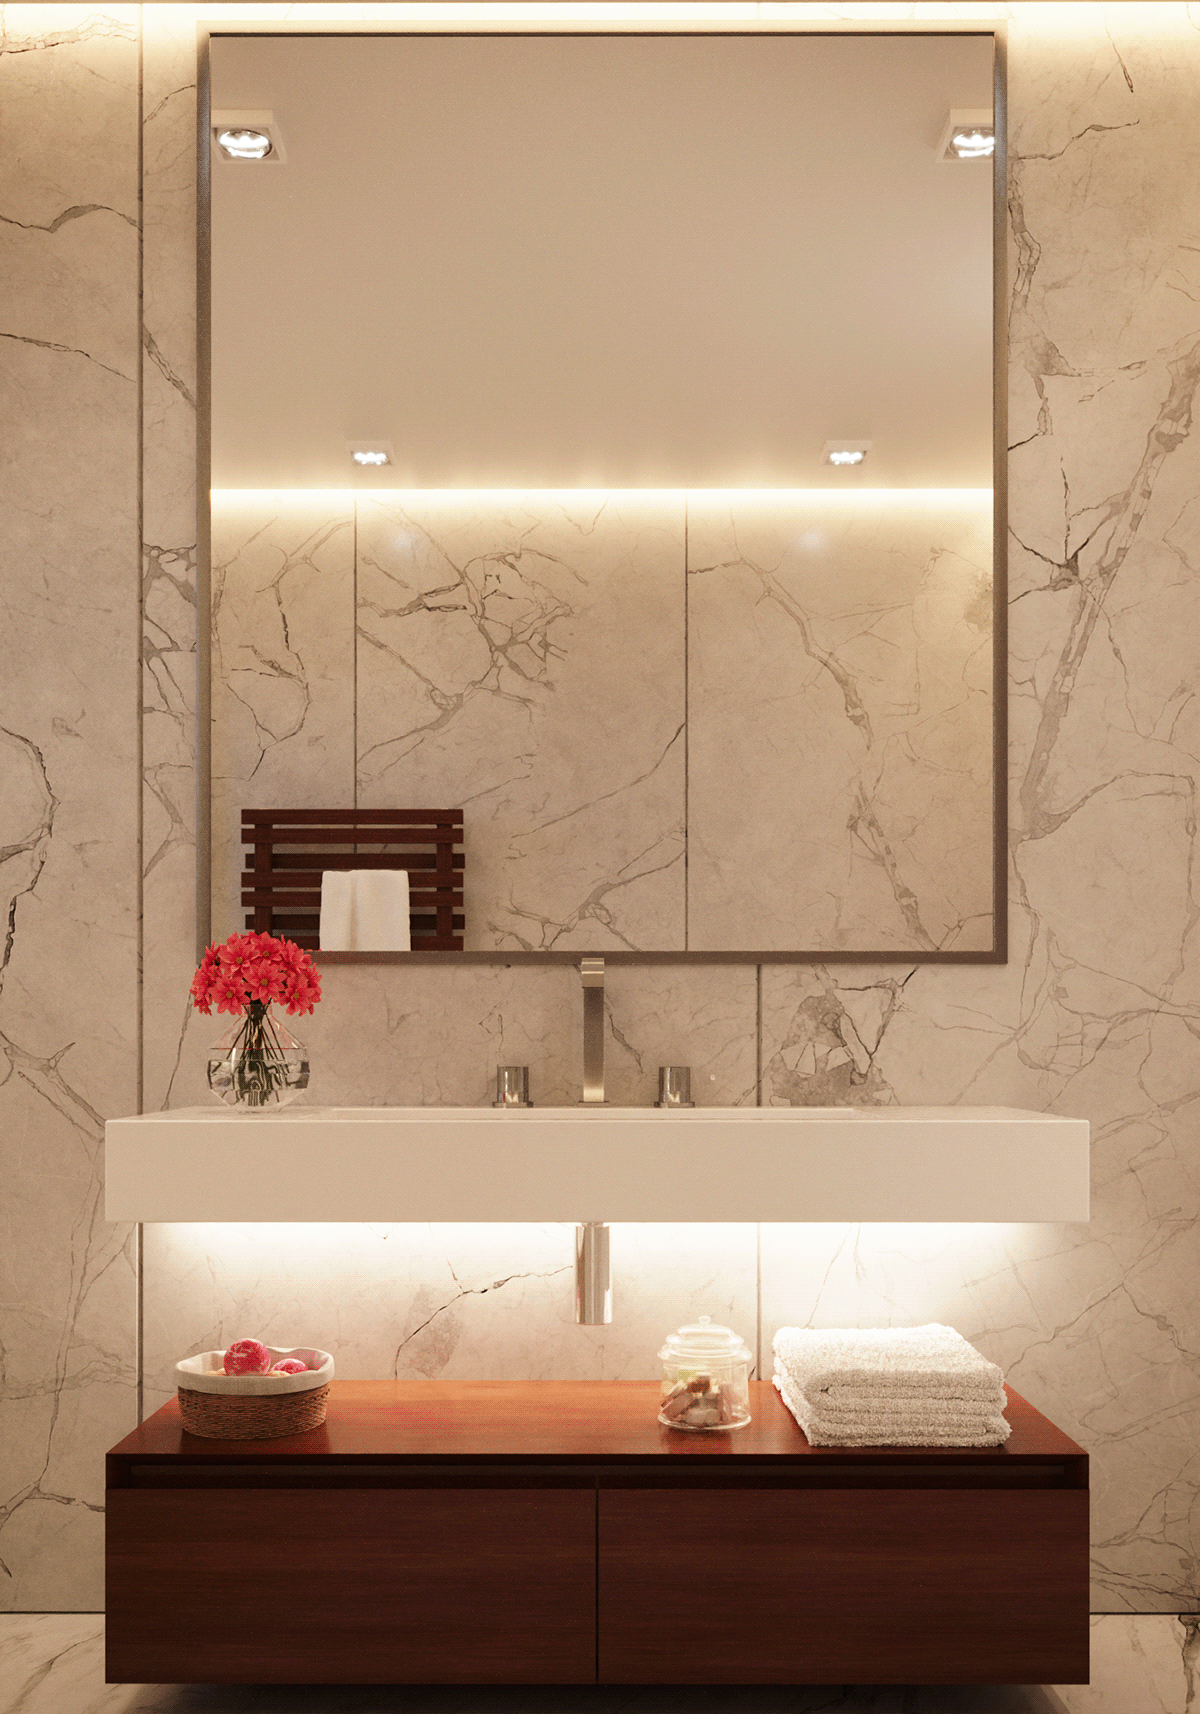 bathroom design visualization interior design  modern architecture archviz Render bathroom interior 3ds max CGI